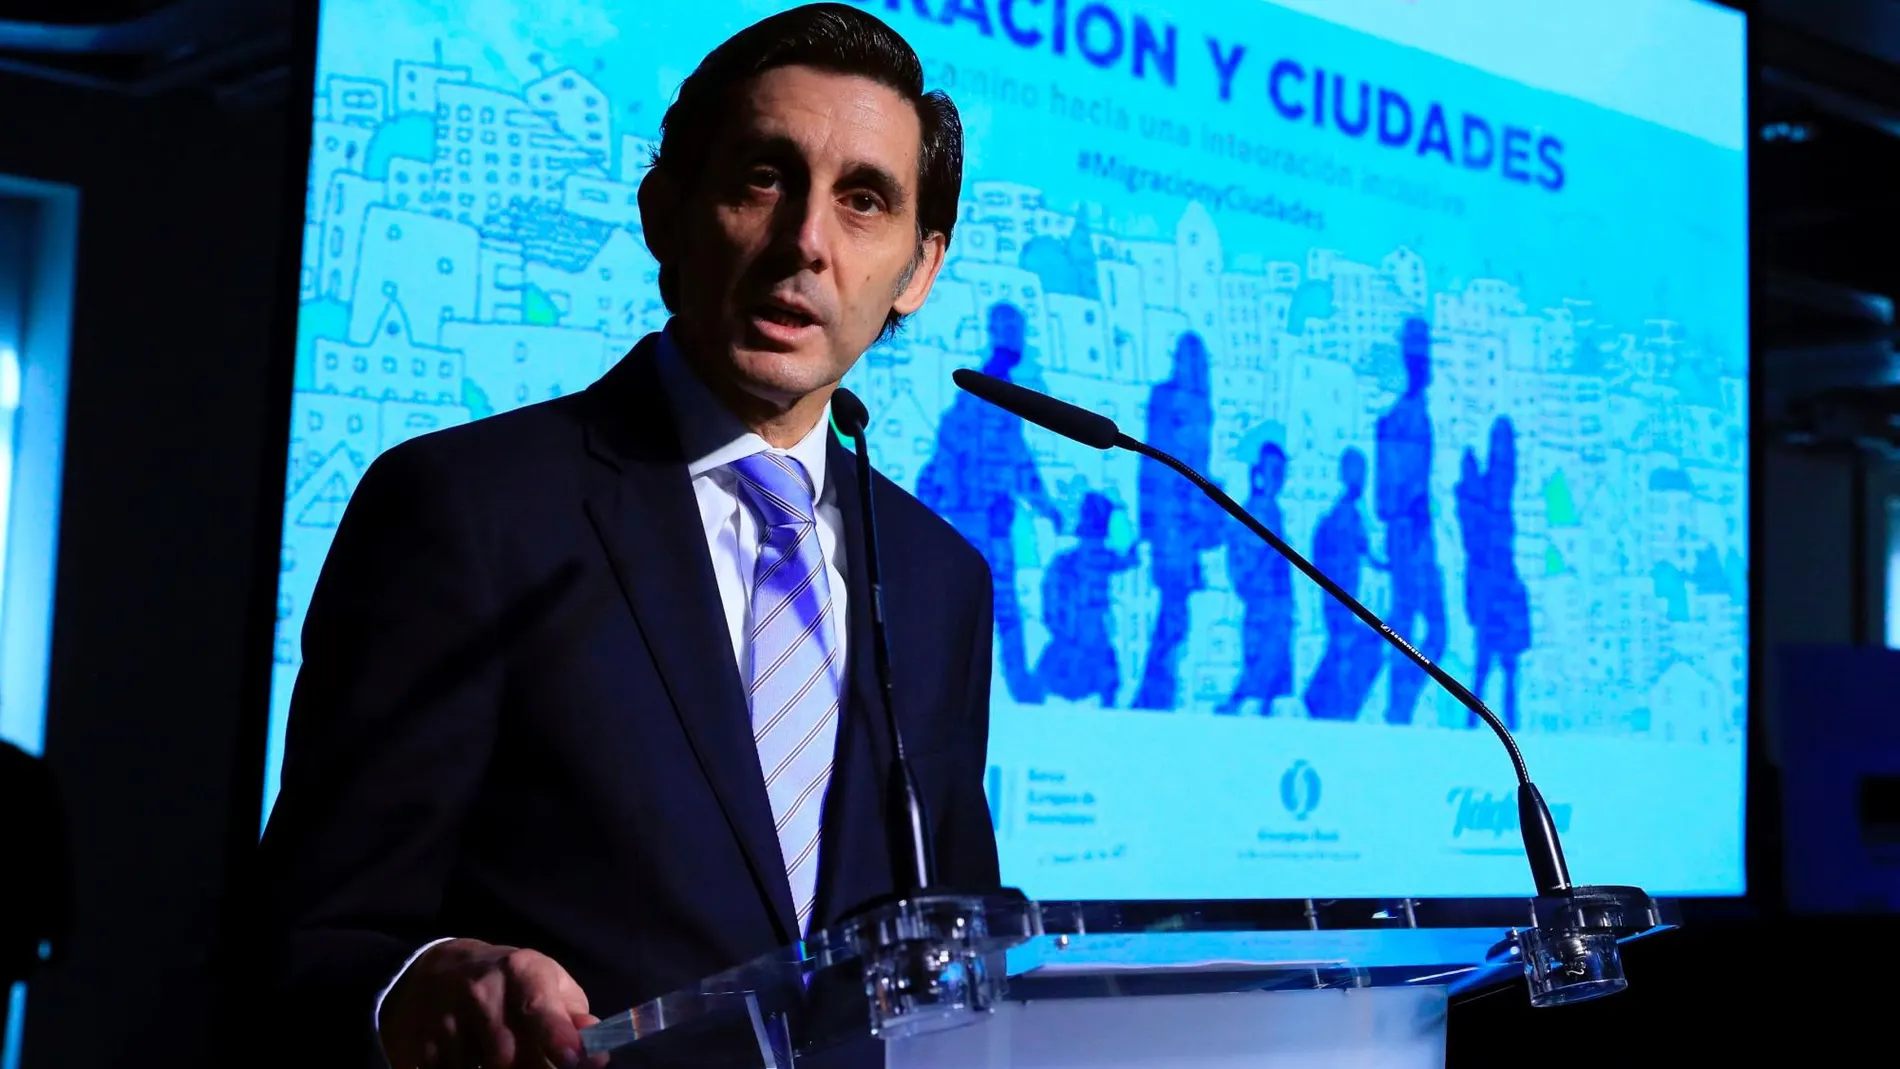 El presidente de Telefónica, José María Álvarez Pallete, durante su discurso en la jornada "Migración y ciudades: el camino hacia una integración inclusiva